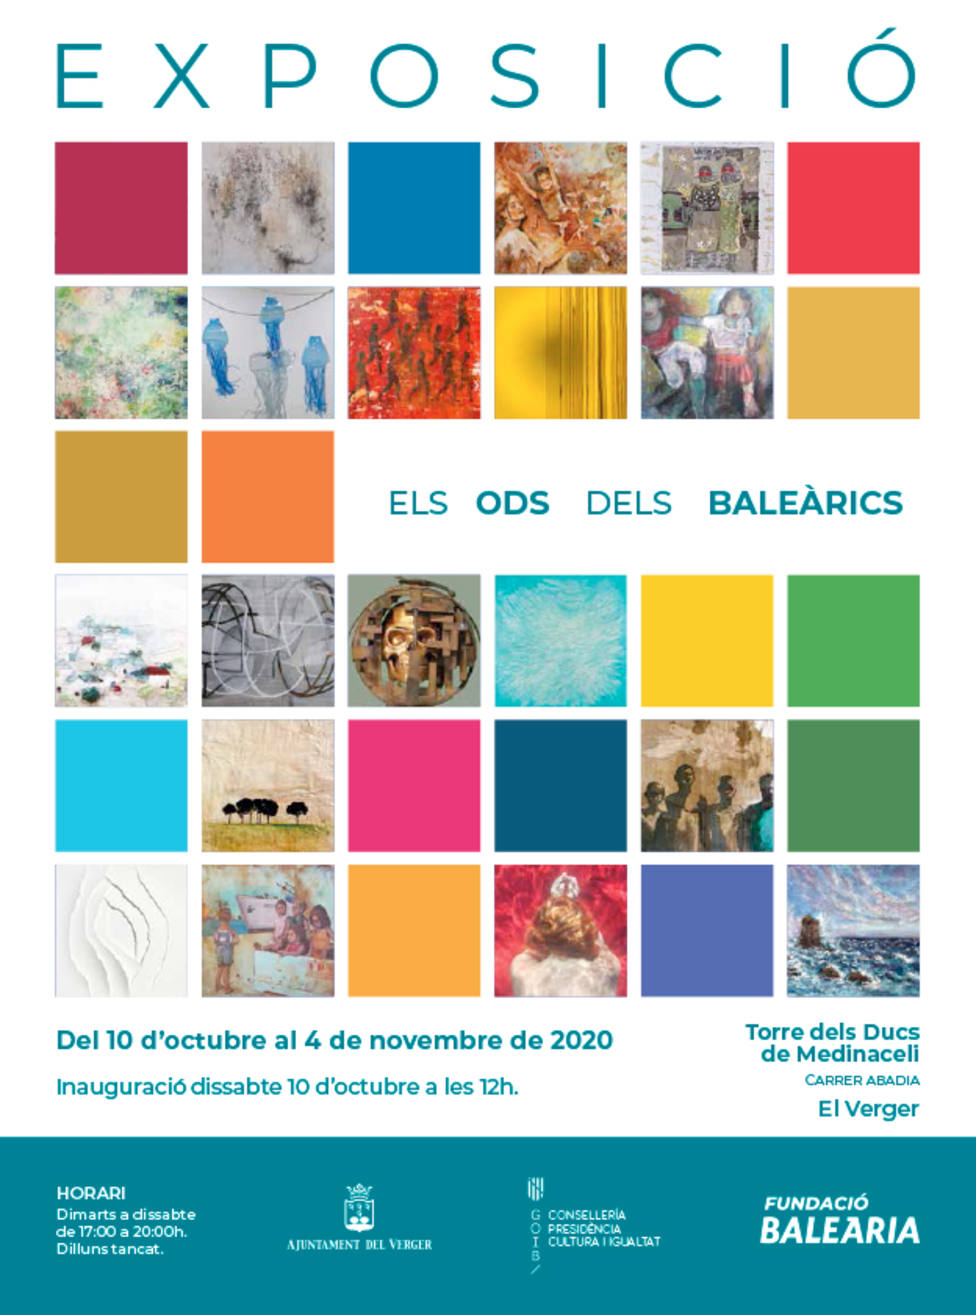 Fundació Baleària organiza la exposición Baleàrics ODS